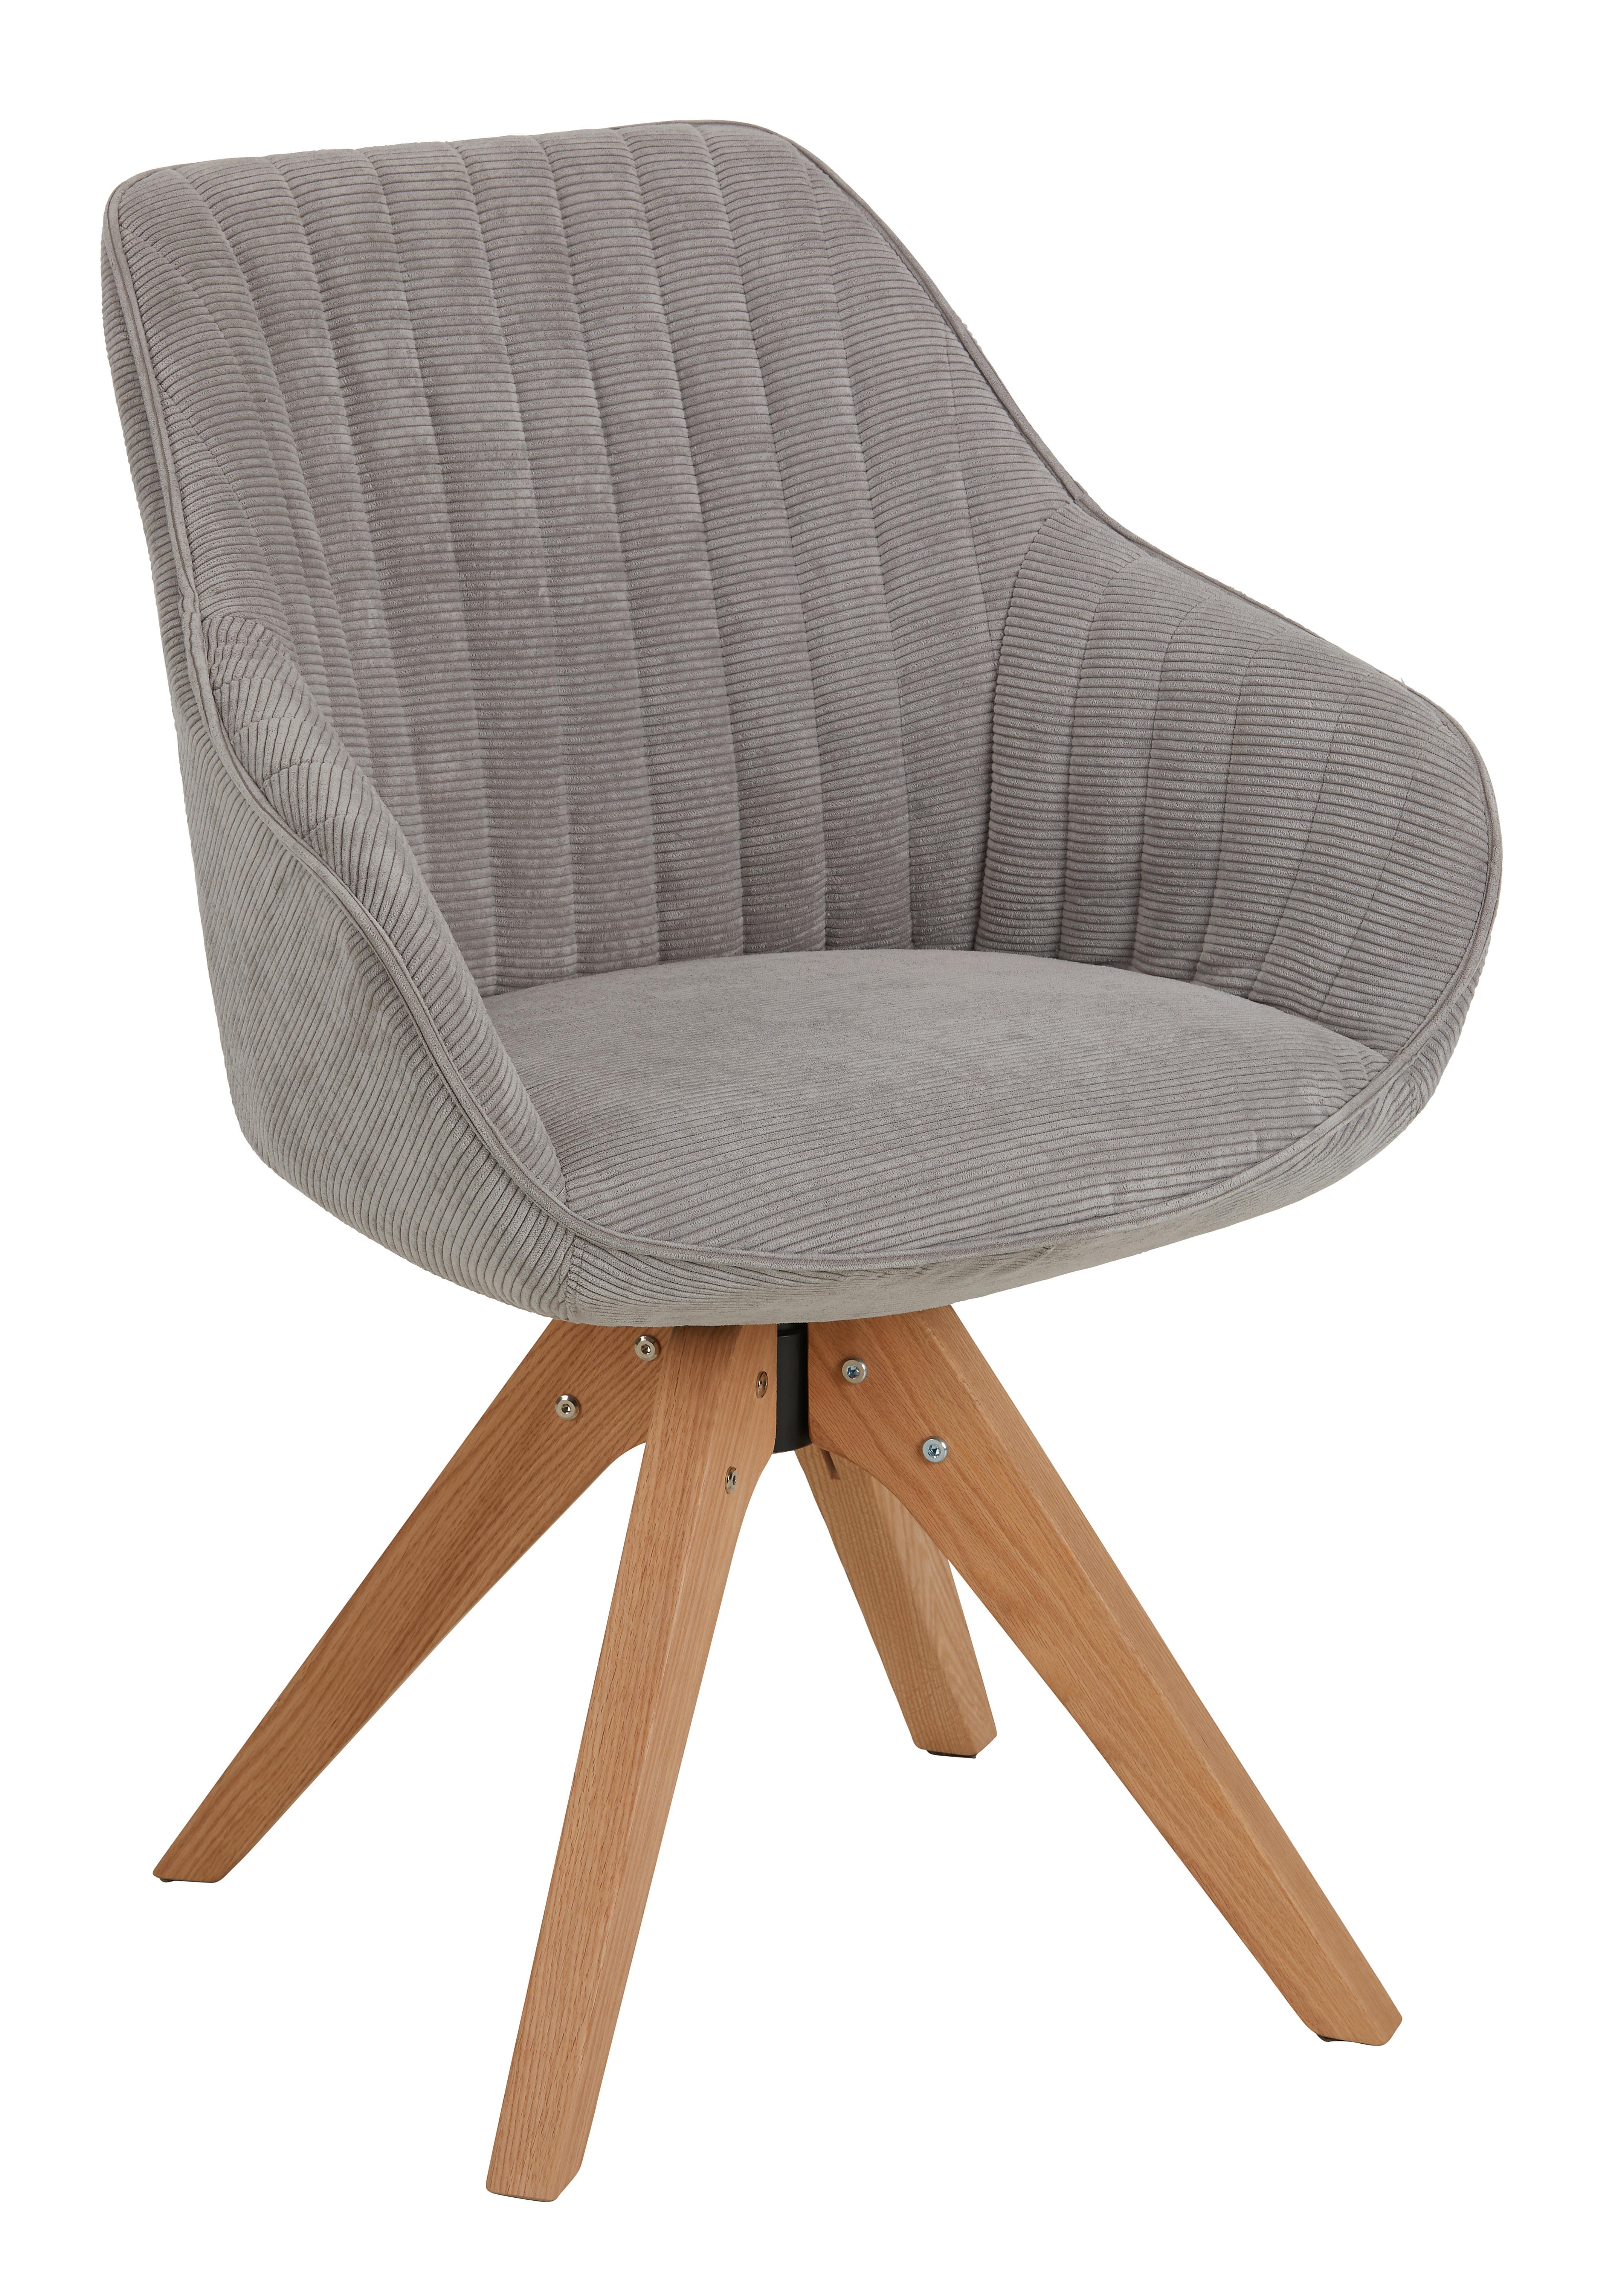 Židle S Područkami Chill -Bp- - šedá/světle šedá, Moderní, dřevo/textil (60/83/65cm) - Premium Living